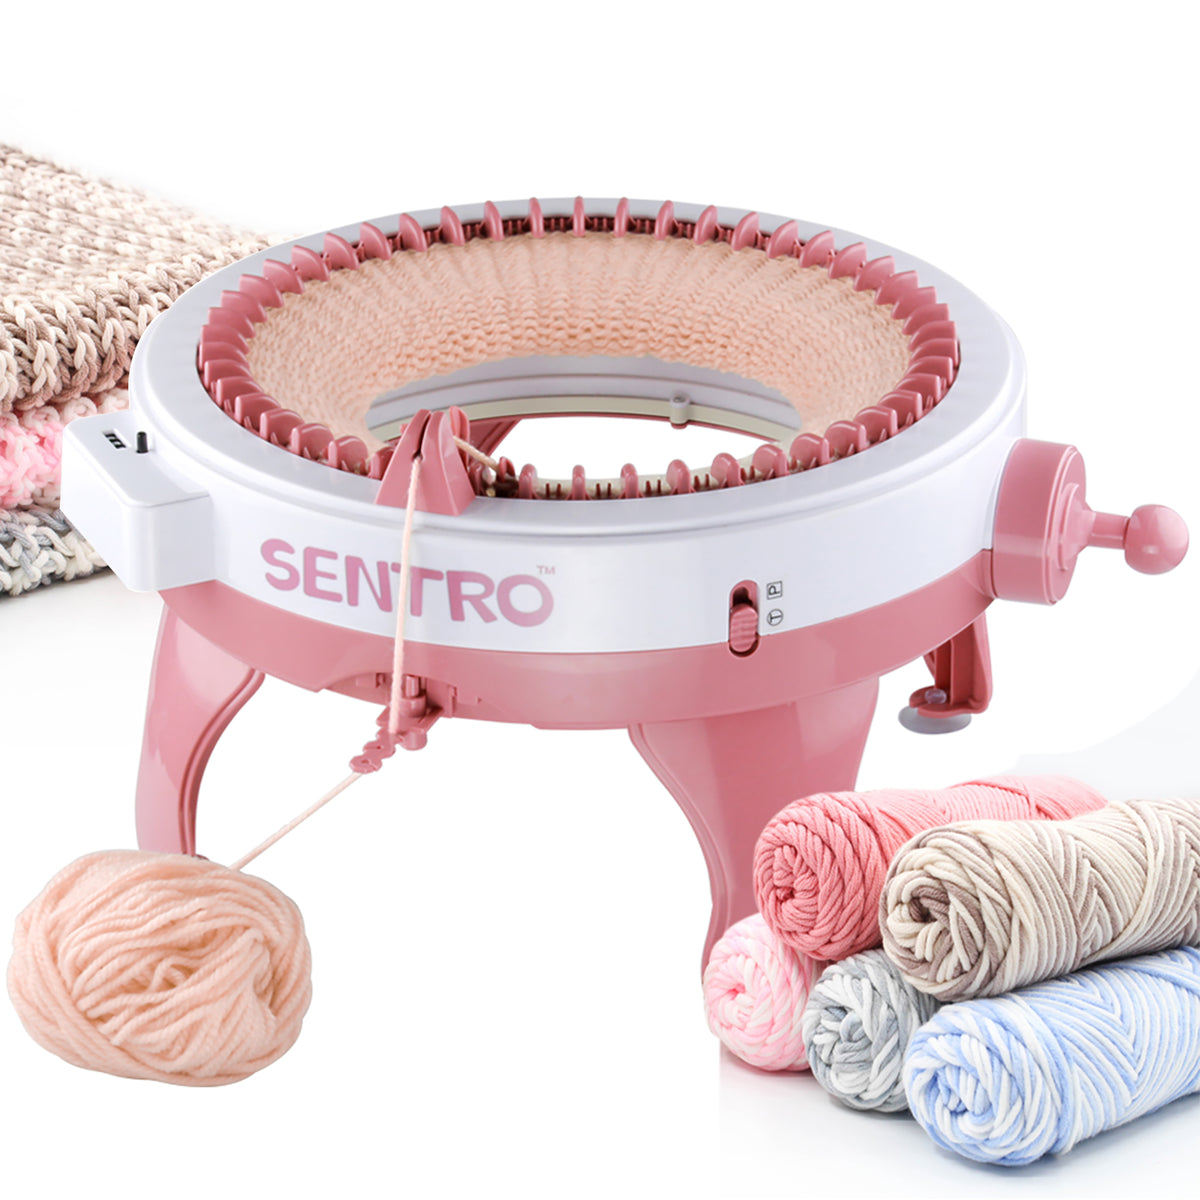 Sentro Knitting Machine 40 Needles 48 Needles, Sentro 48 Needles